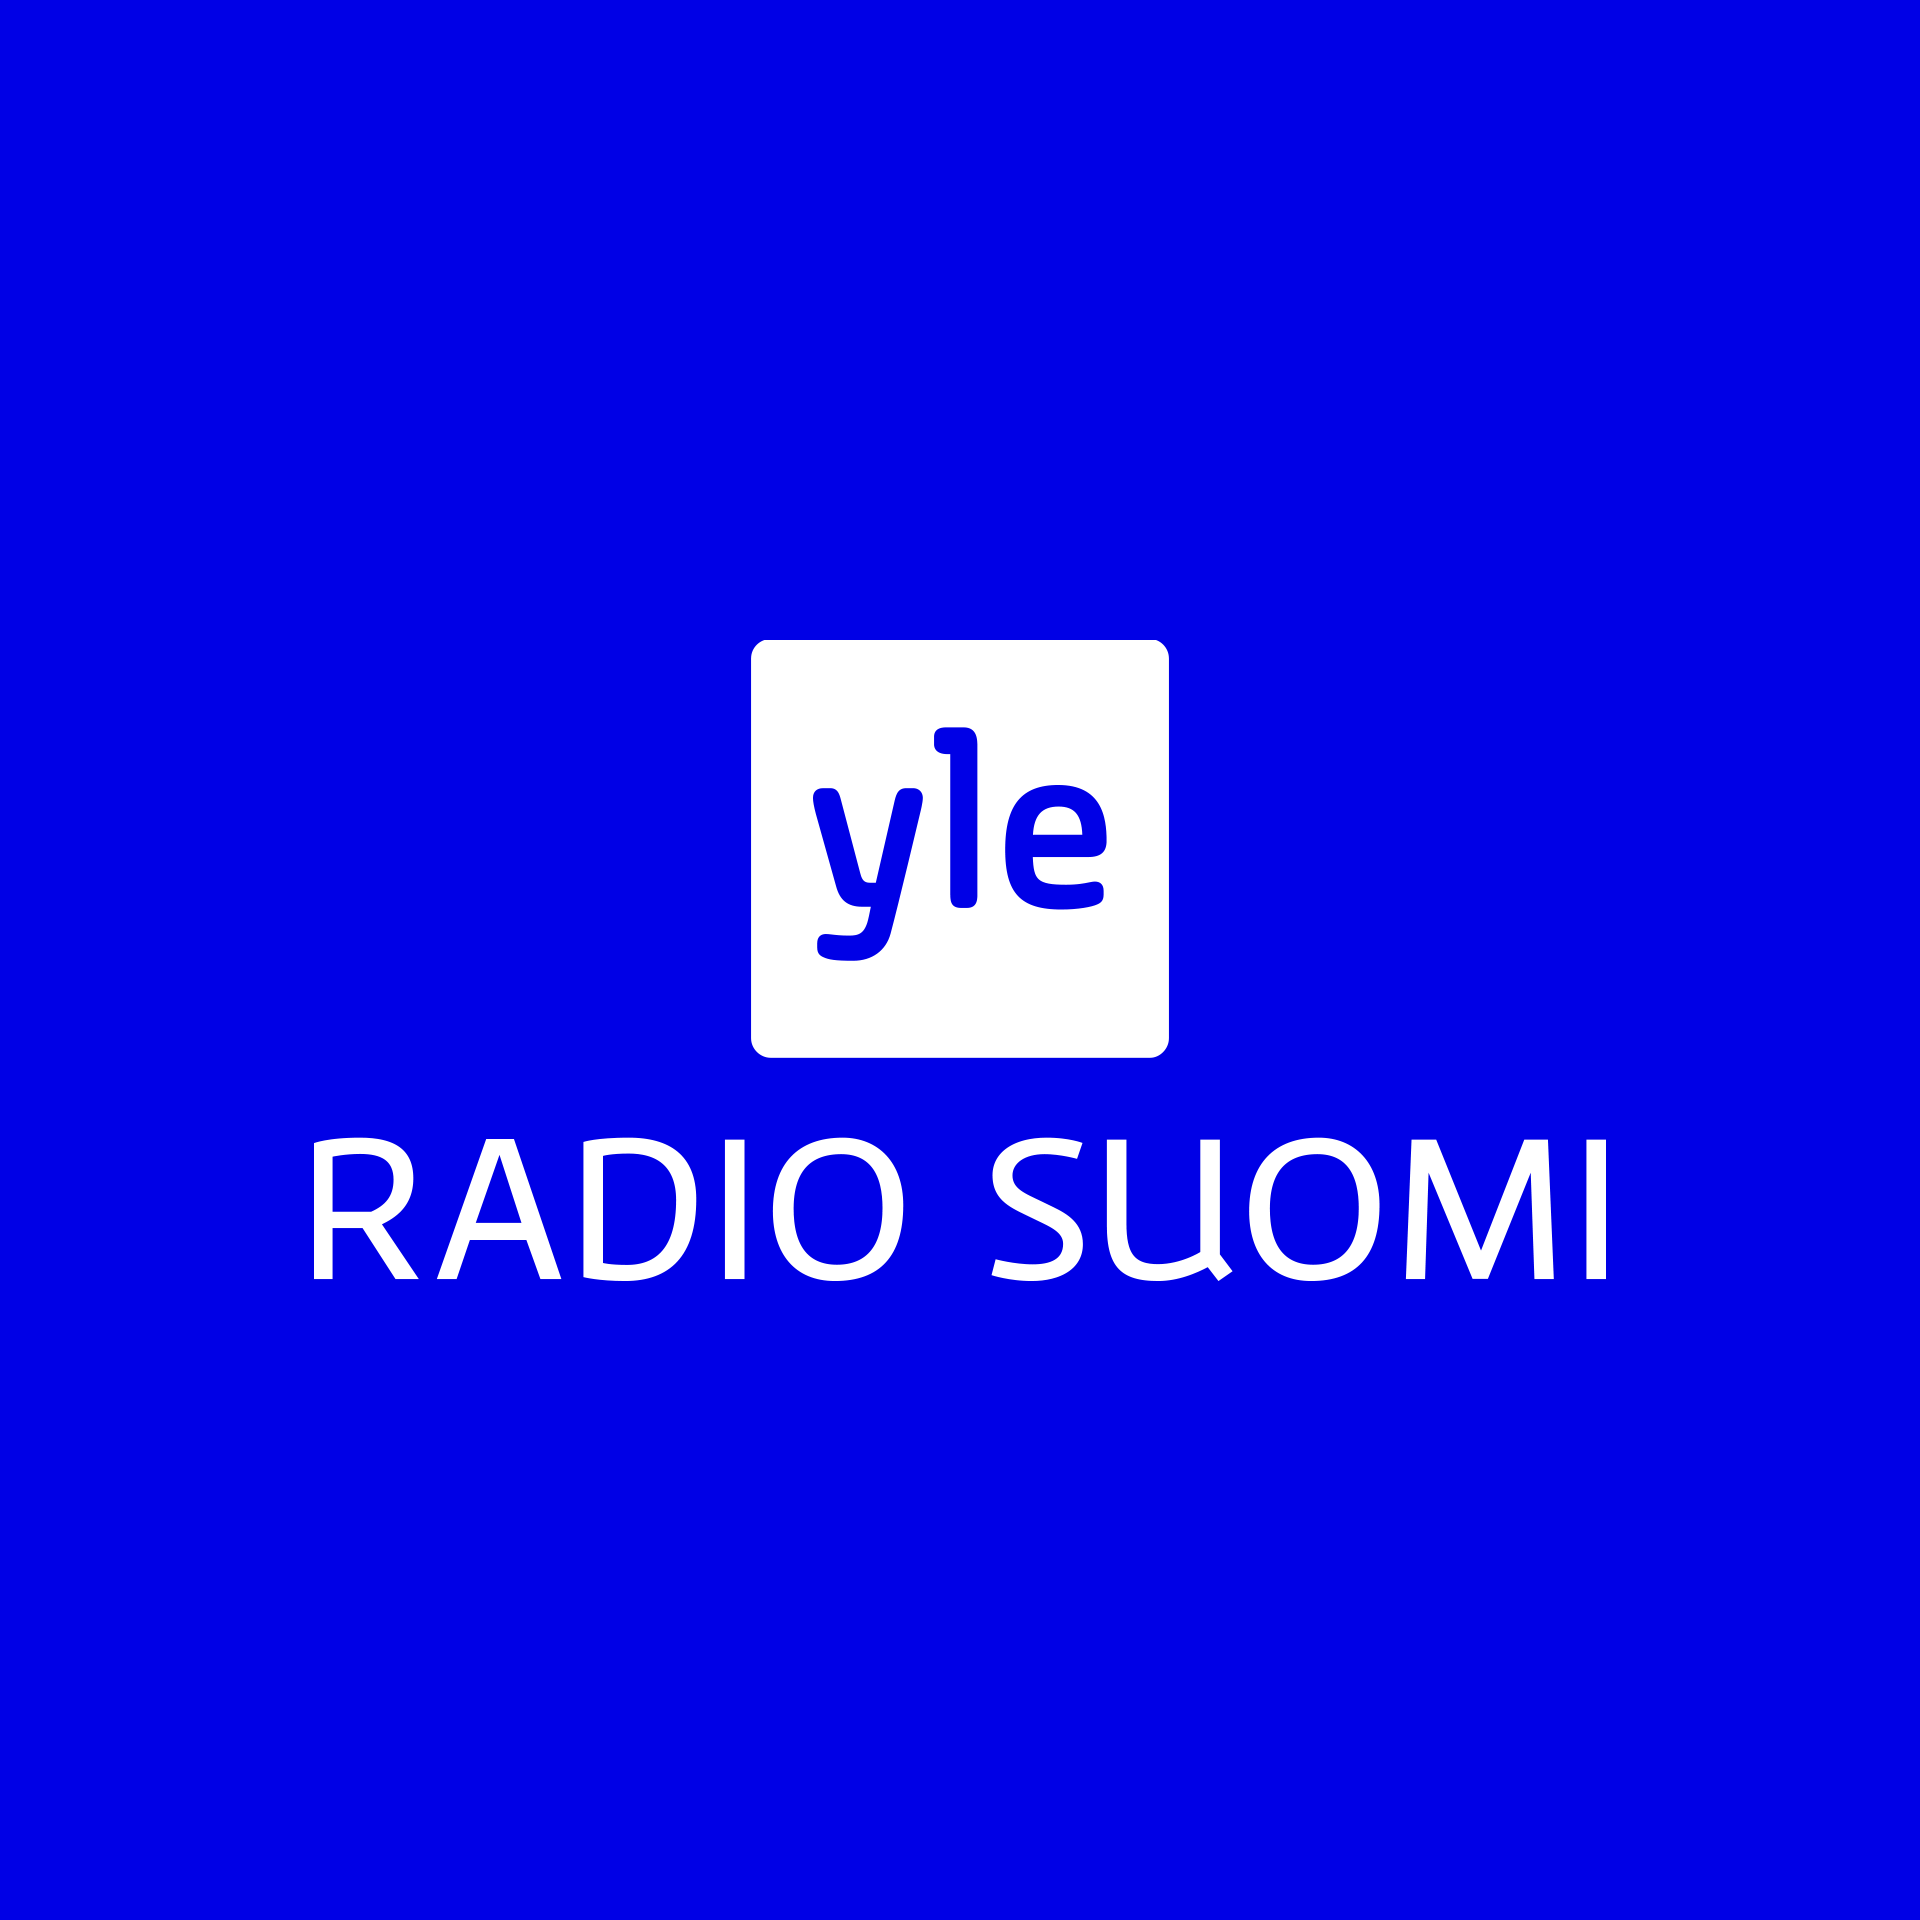 Yle-Radio-Suomi-valkoinen-logo-sinisella-pohjalla.png